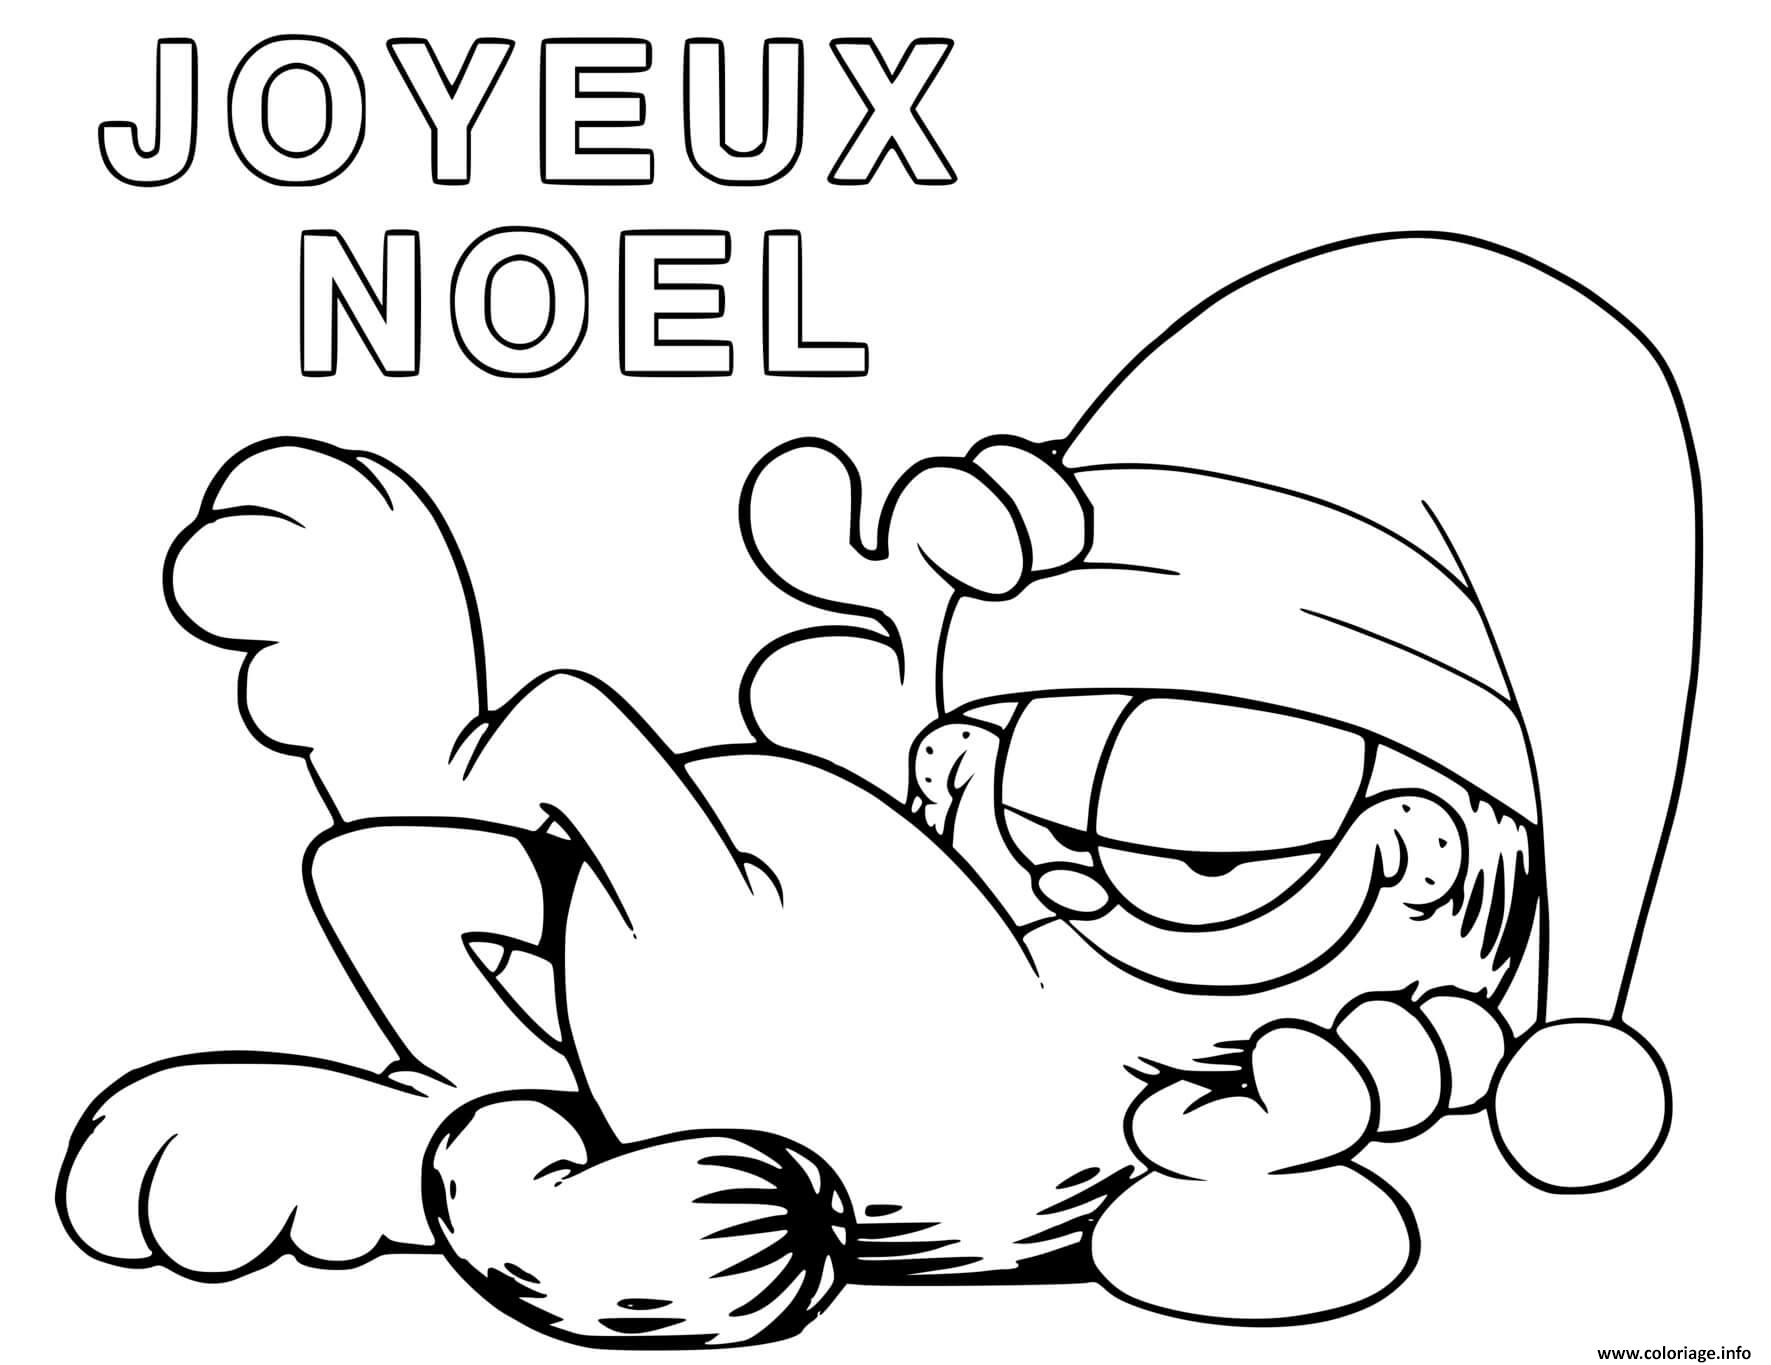 Coloriage Garfield Joyeux Noel Dessin à Imprimer